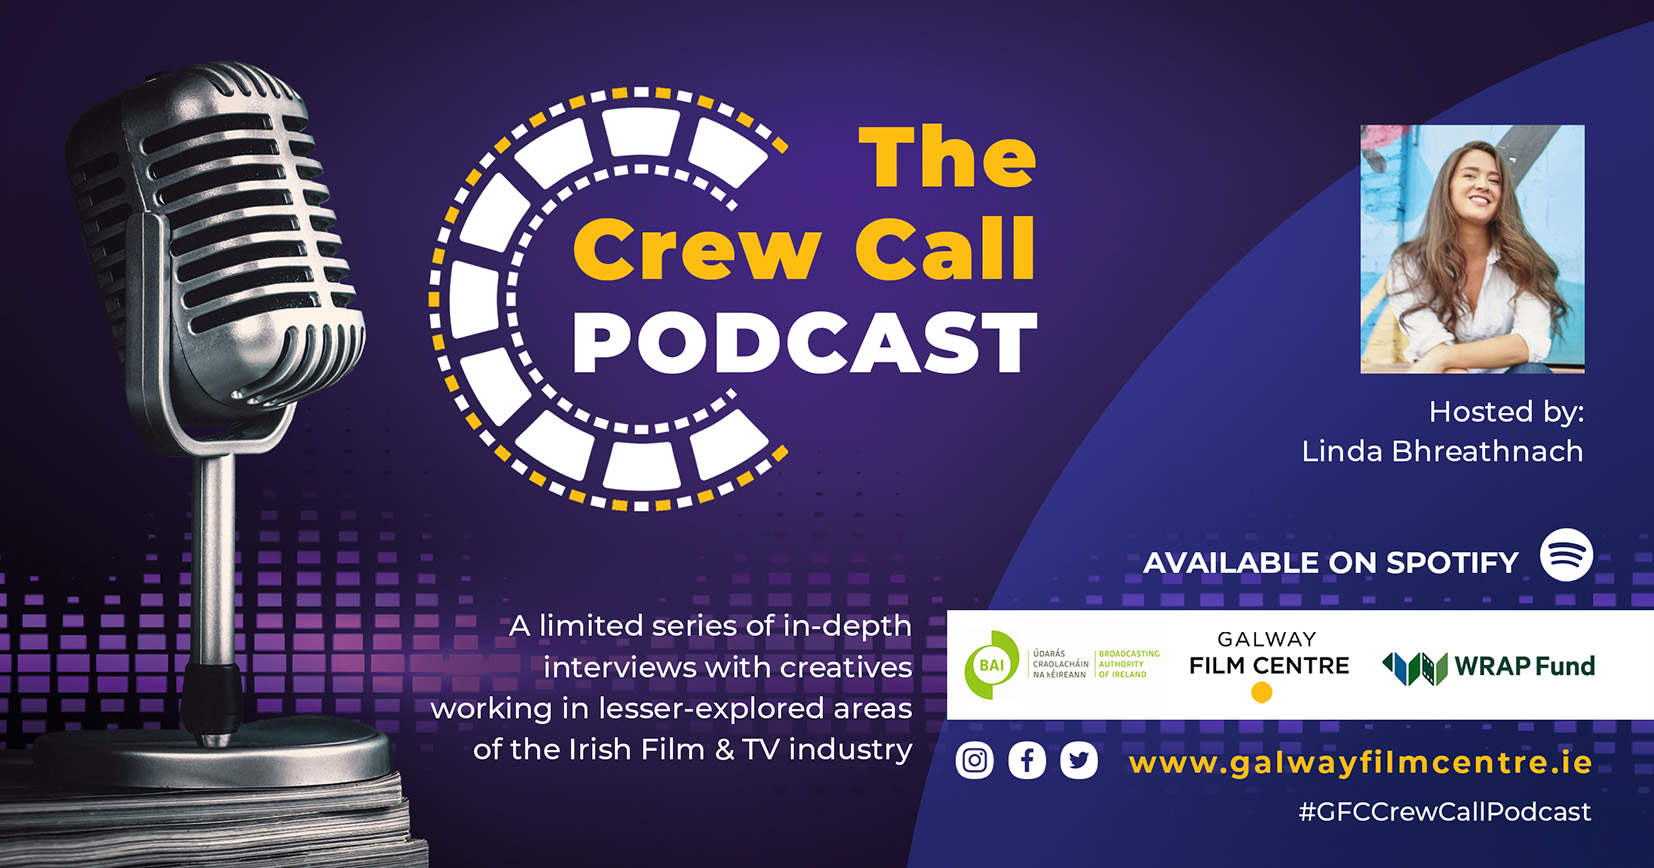 Brand New Podcast Series “The CrewCall Podcast” Is Now Available /  Tá Sraith Podchraoltaí Úrnua “The CrewCall Podcast” ar Fáil Anois